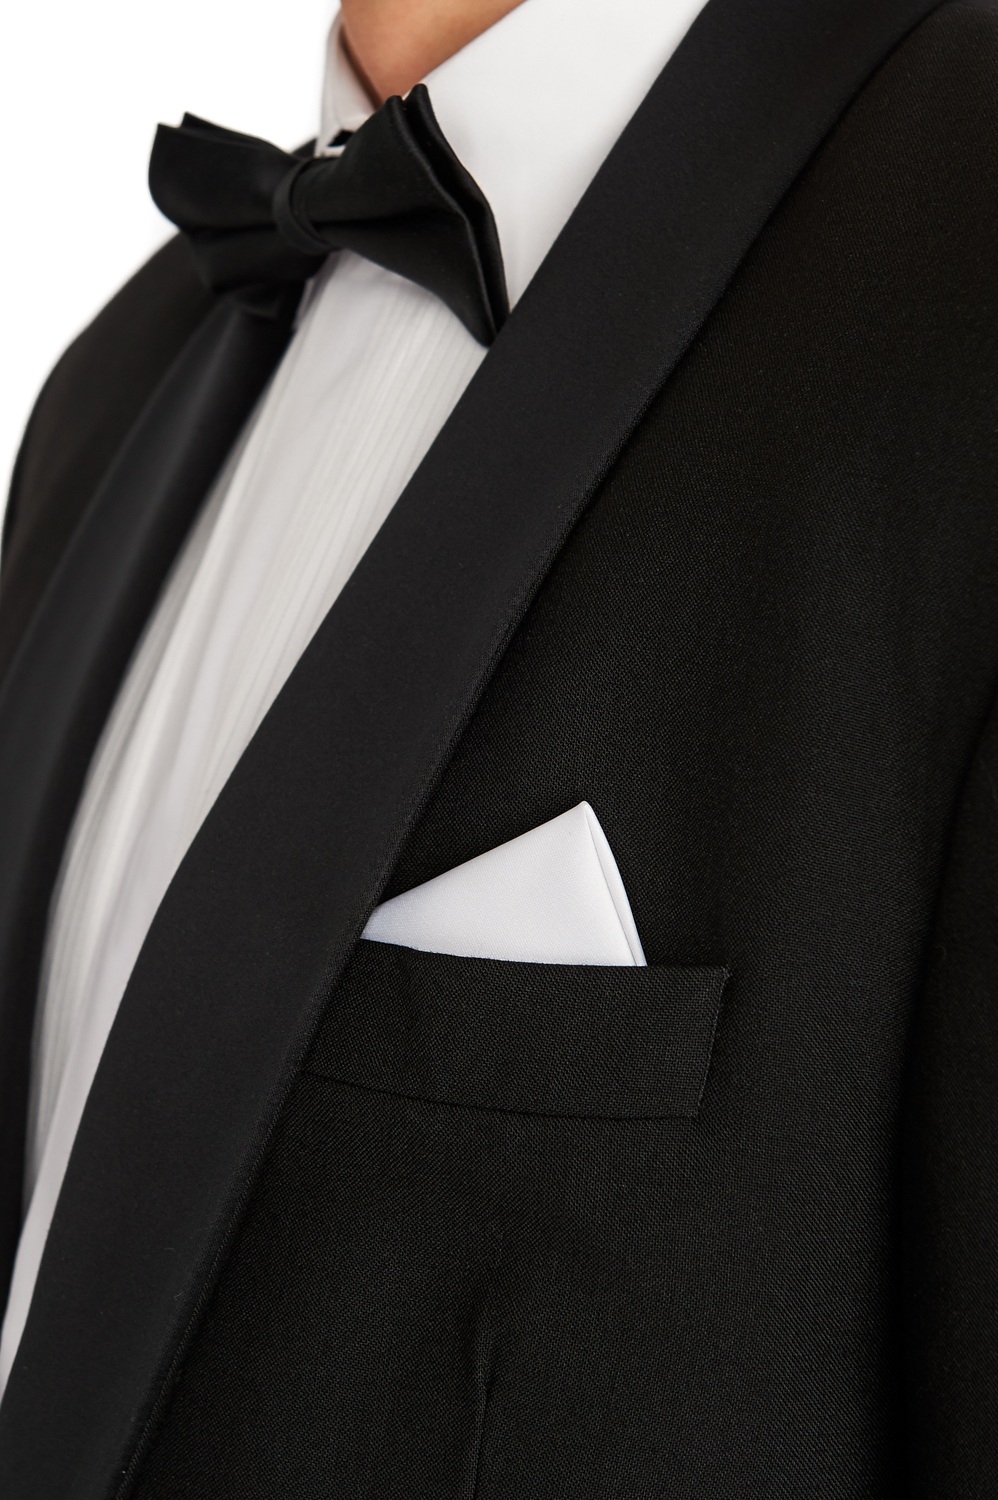 Black Tie Event Cambridge Hire Suit | Moss Hire